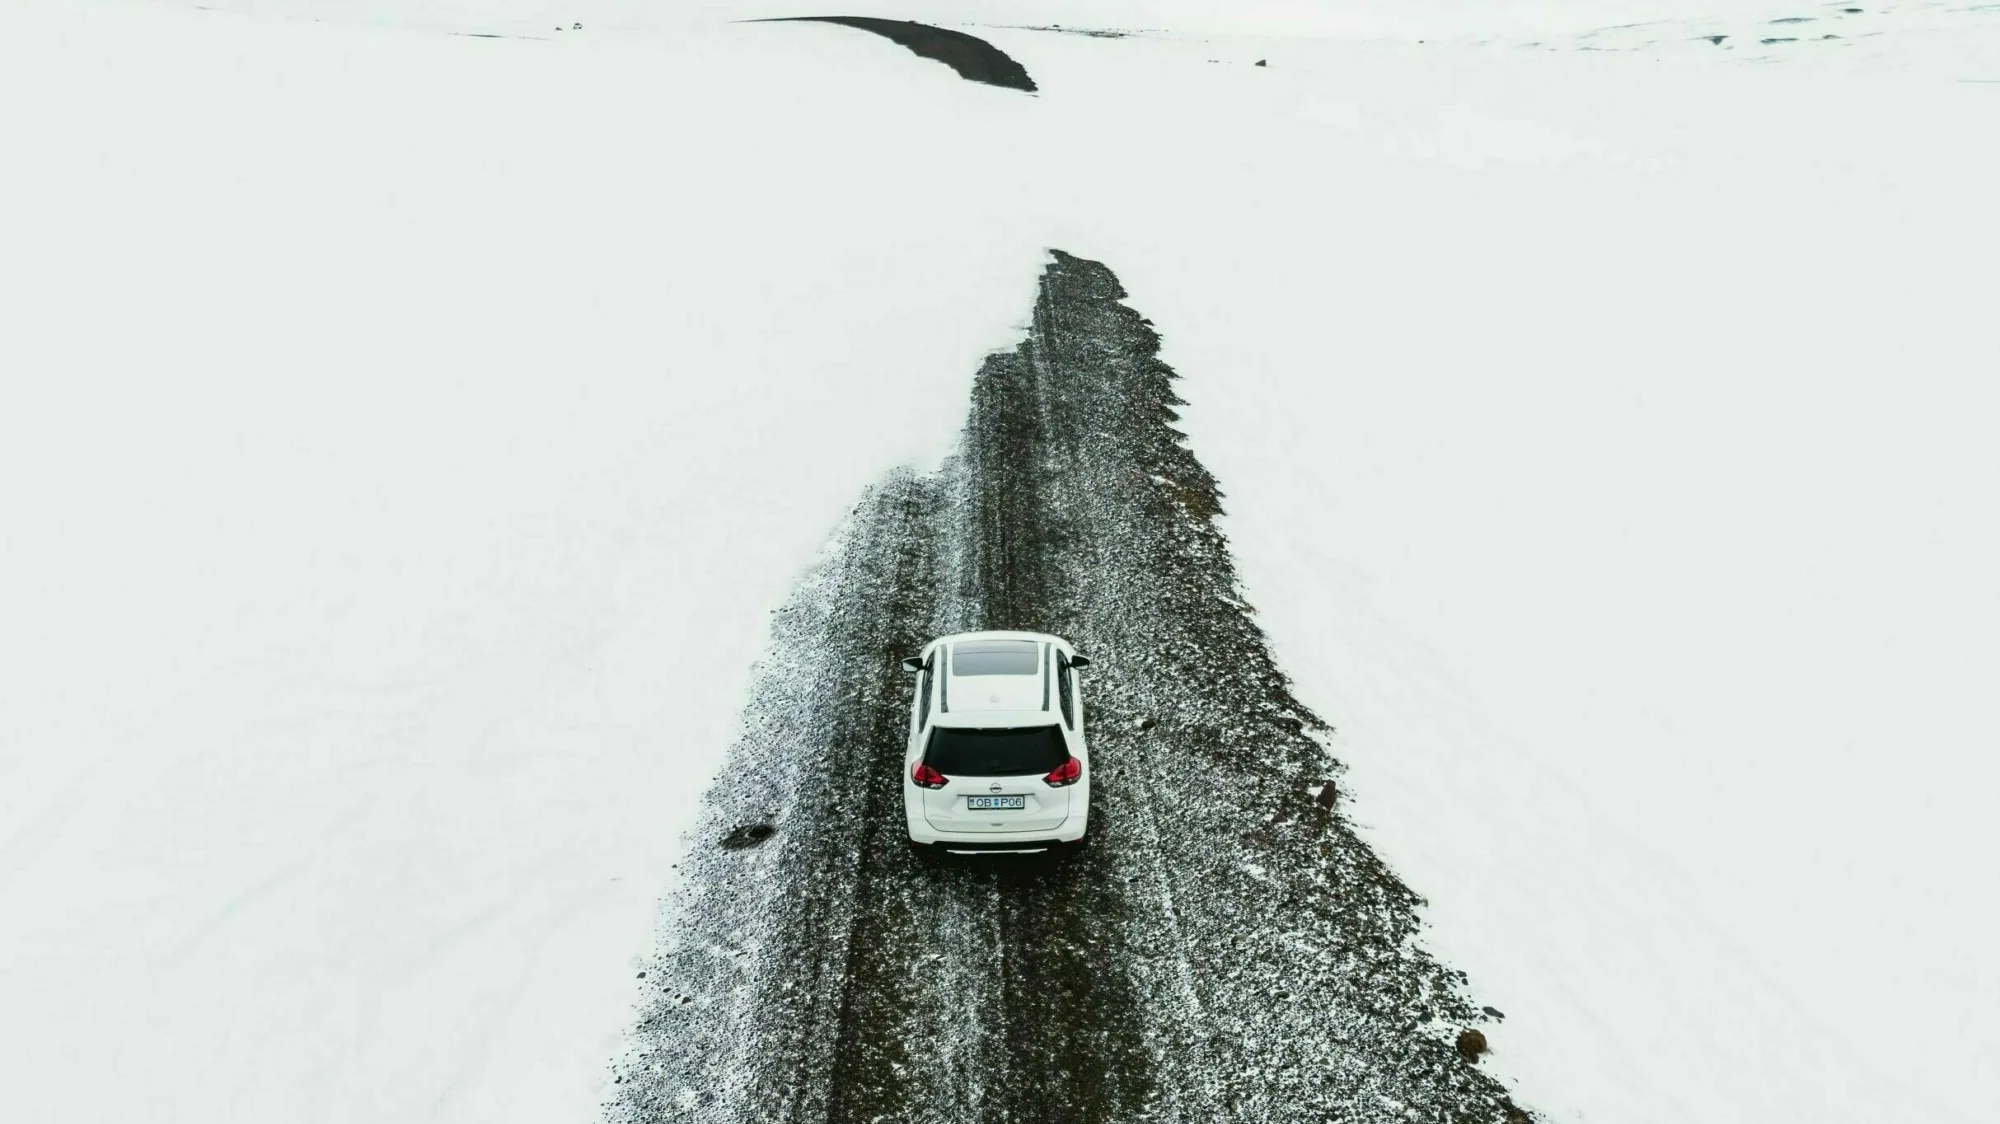 Straße mit Schnee in Westisland im Winter, weißes Auto fährt auf Straße, die Schneeverwehungen hat, rund um die Straße ist alles weiß